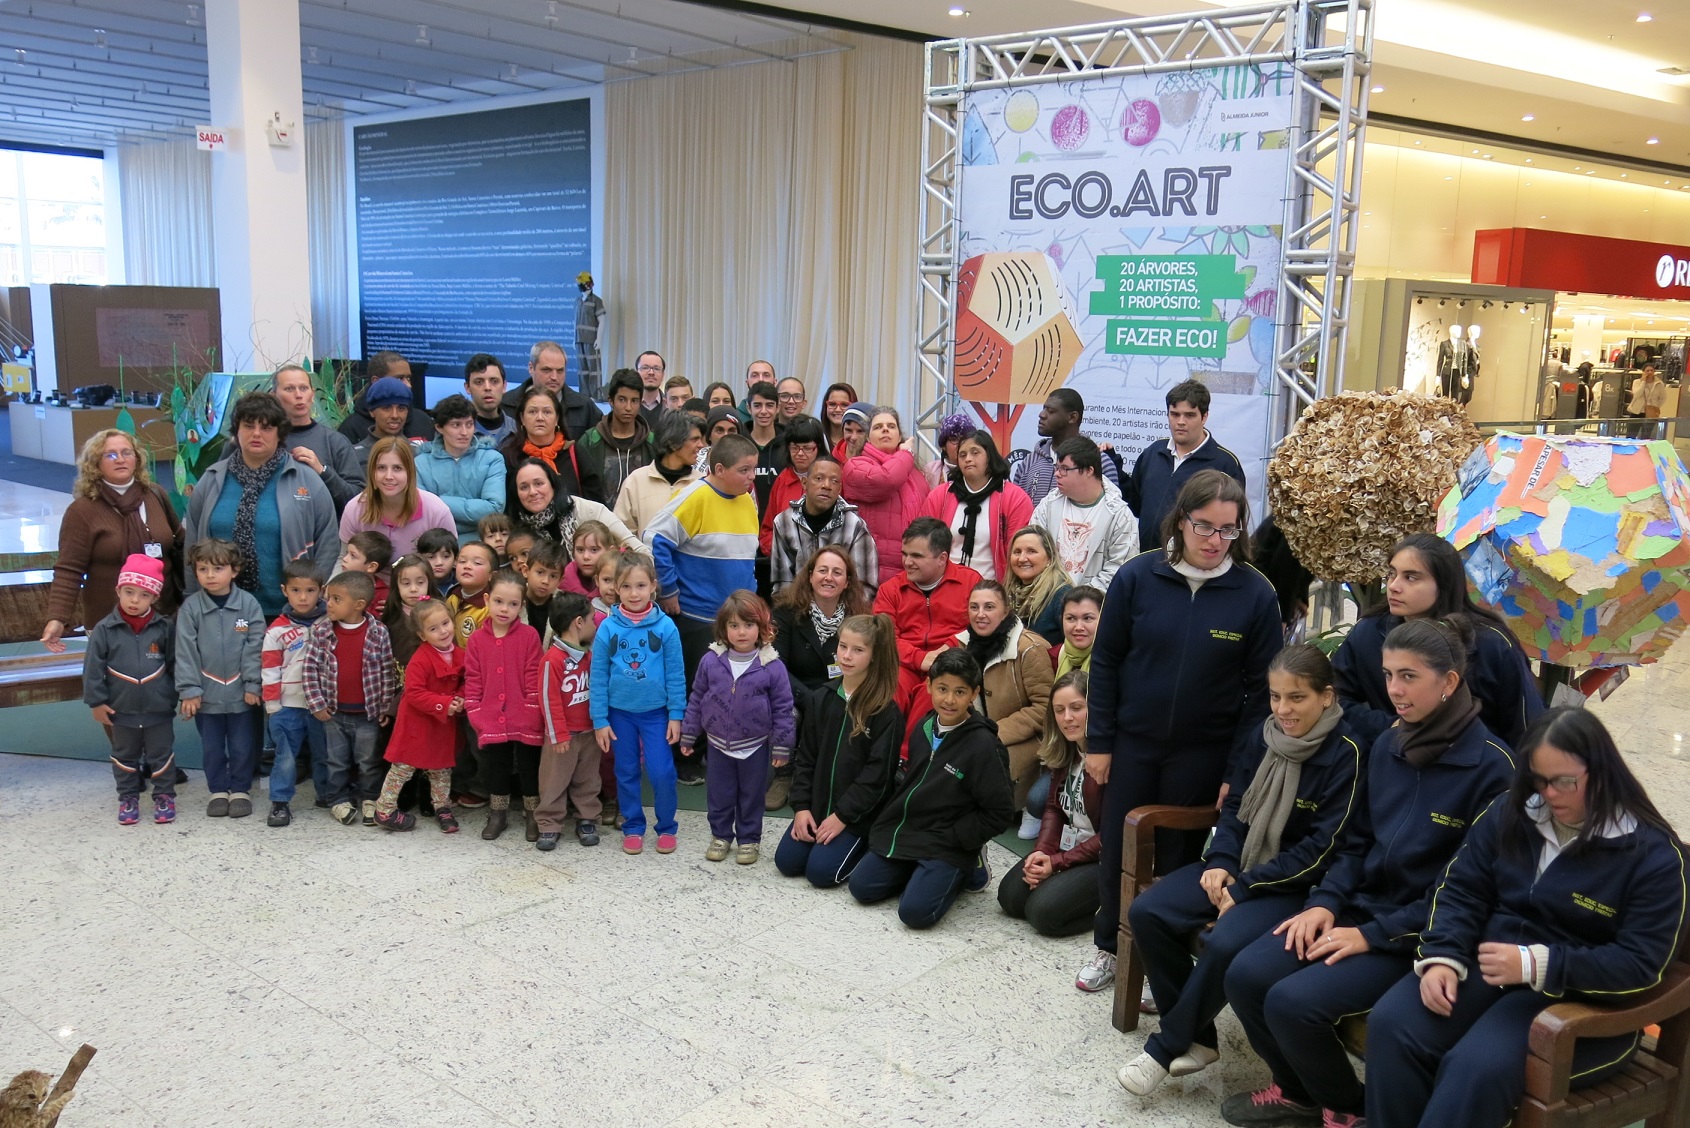 Ação integra projeto Eco.Art e aconteceu na tarde de segunda-feira (20) na Praça de Eventos, reuniu instituições para celebrar